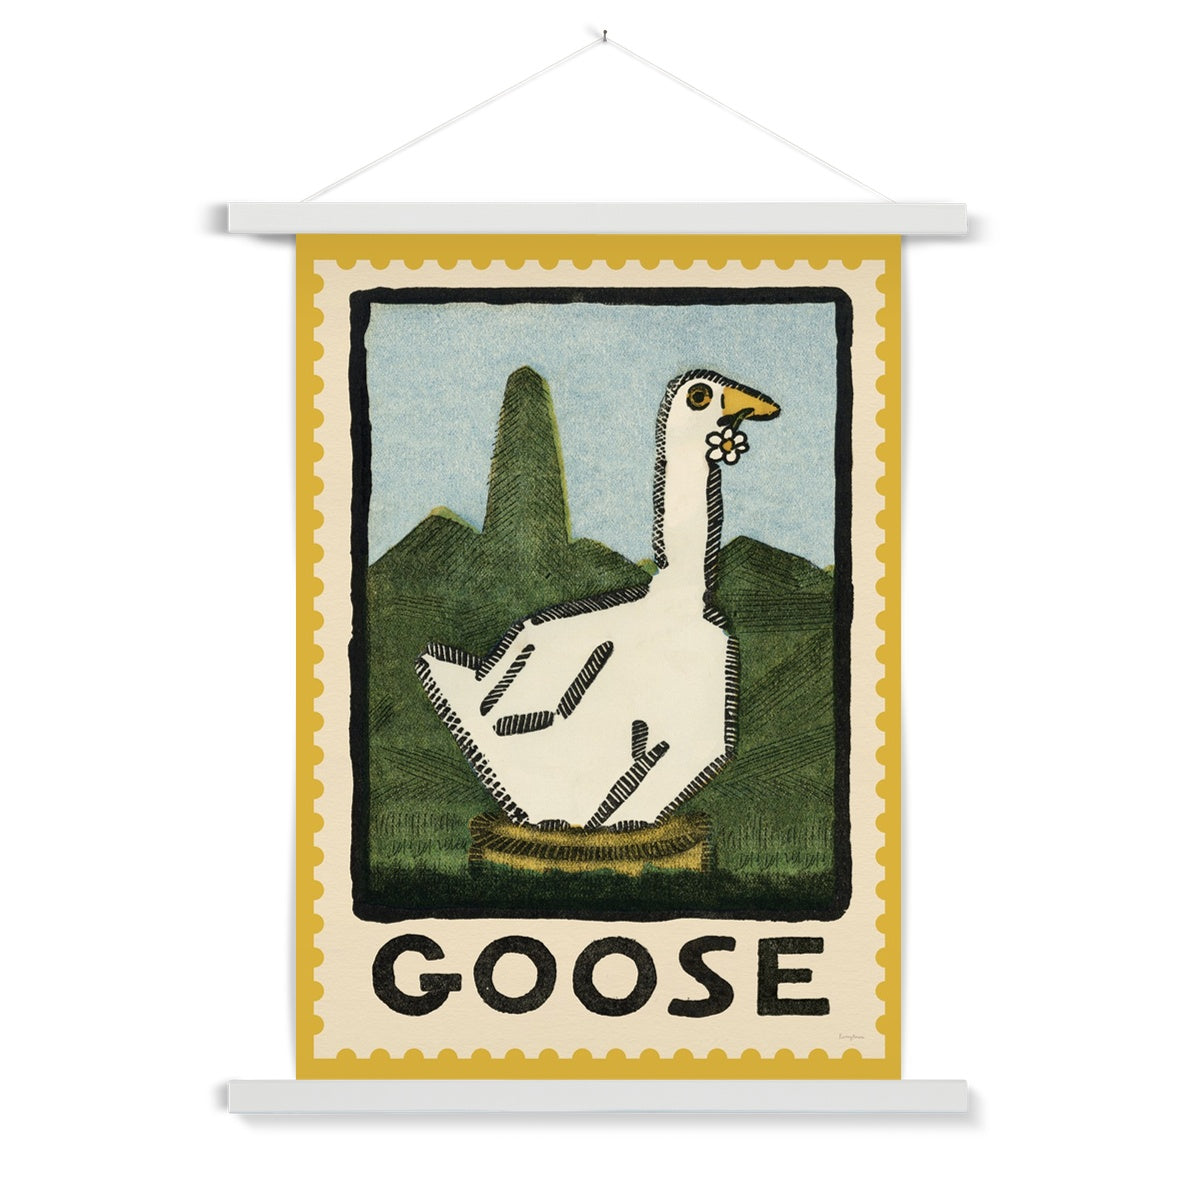 Goose Vintage Postage Stamp Fine Art Print with Hanger